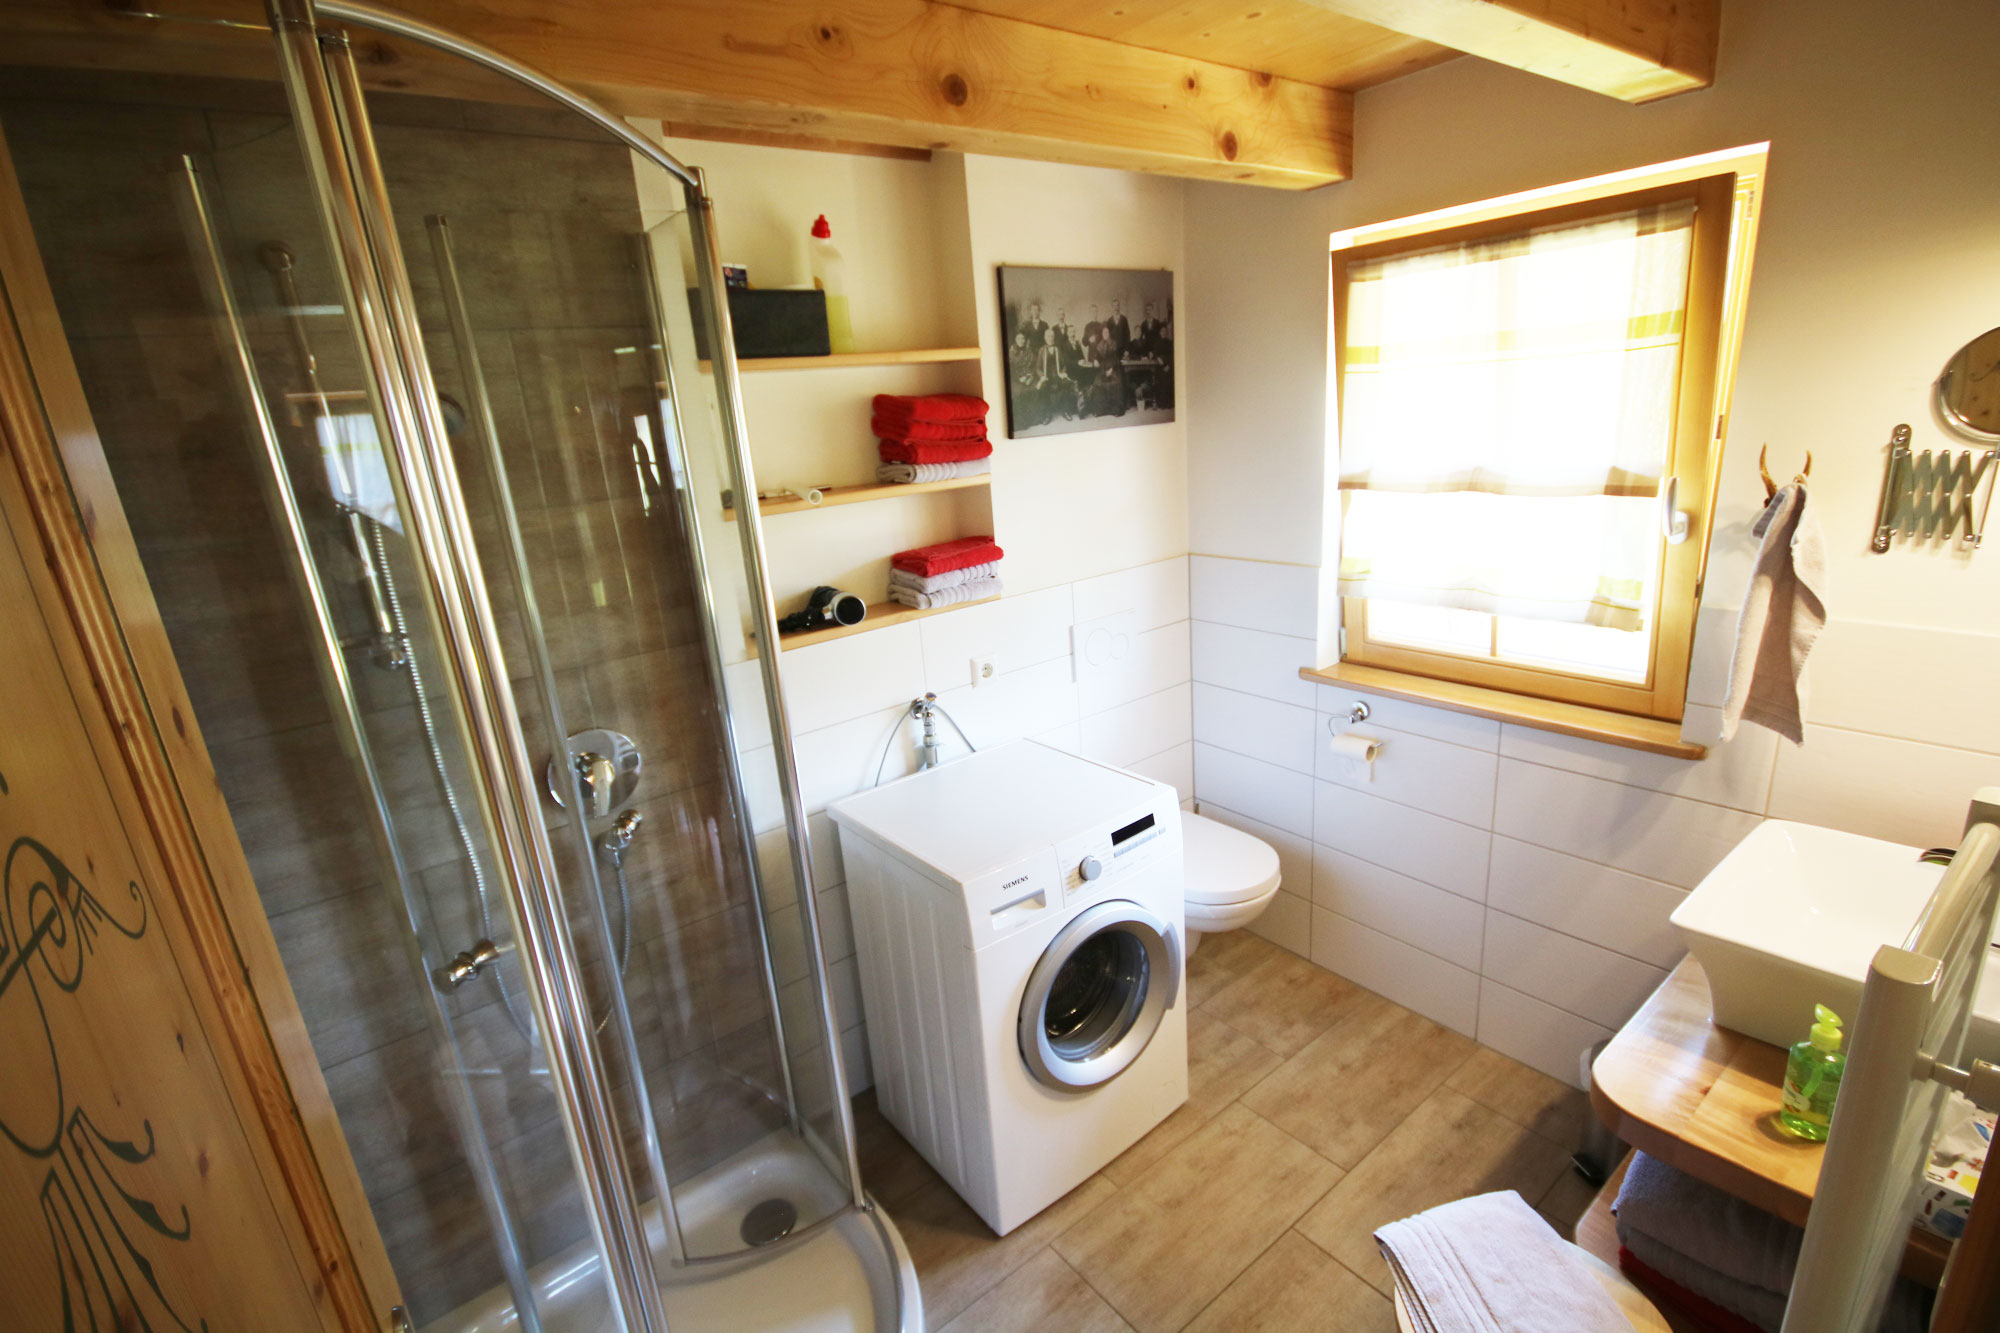 Modernes Bad in unserer Alm-Lodge mit Dusche/Waschmaschine etc.